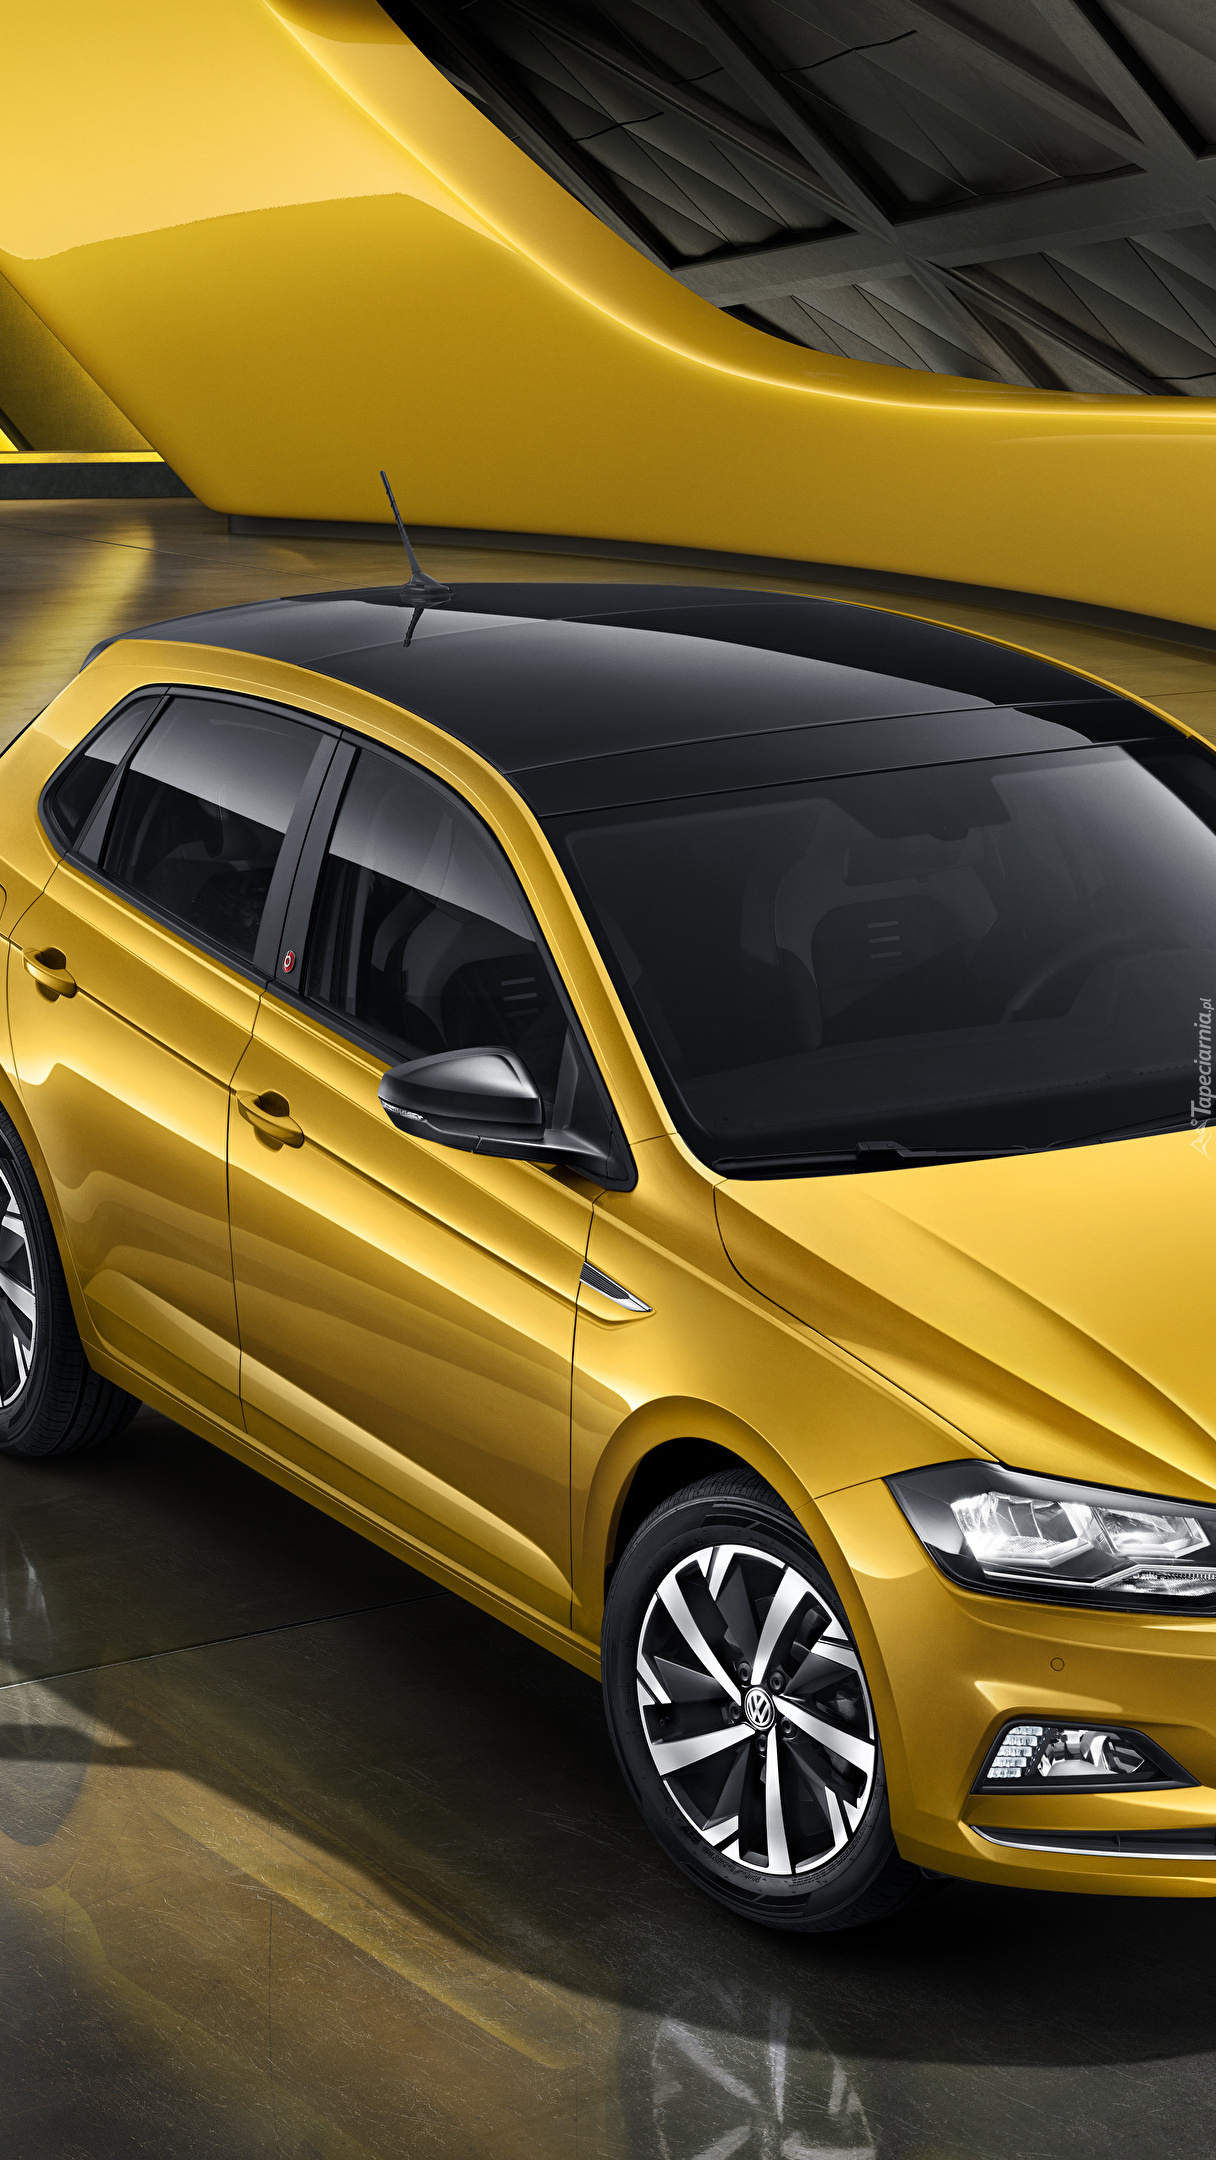 Żółty Volkswagen Polo Plus